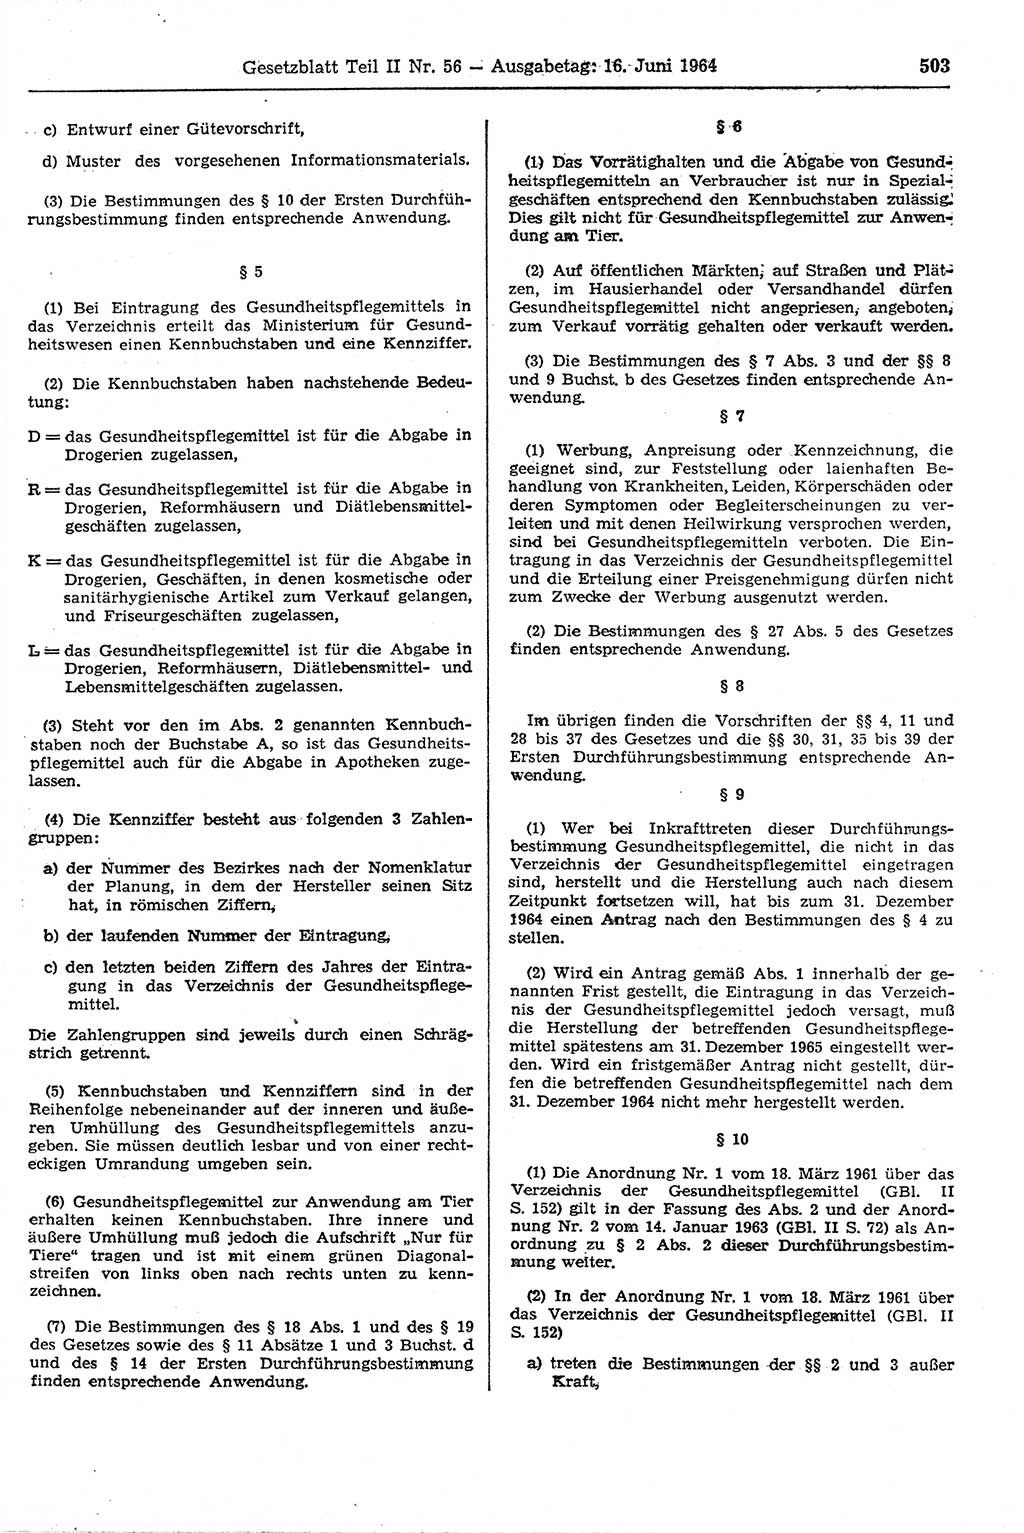 Gesetzblatt (GBl.) der Deutschen Demokratischen Republik (DDR) Teil ⅠⅠ 1964, Seite 503 (GBl. DDR ⅠⅠ 1964, S. 503)